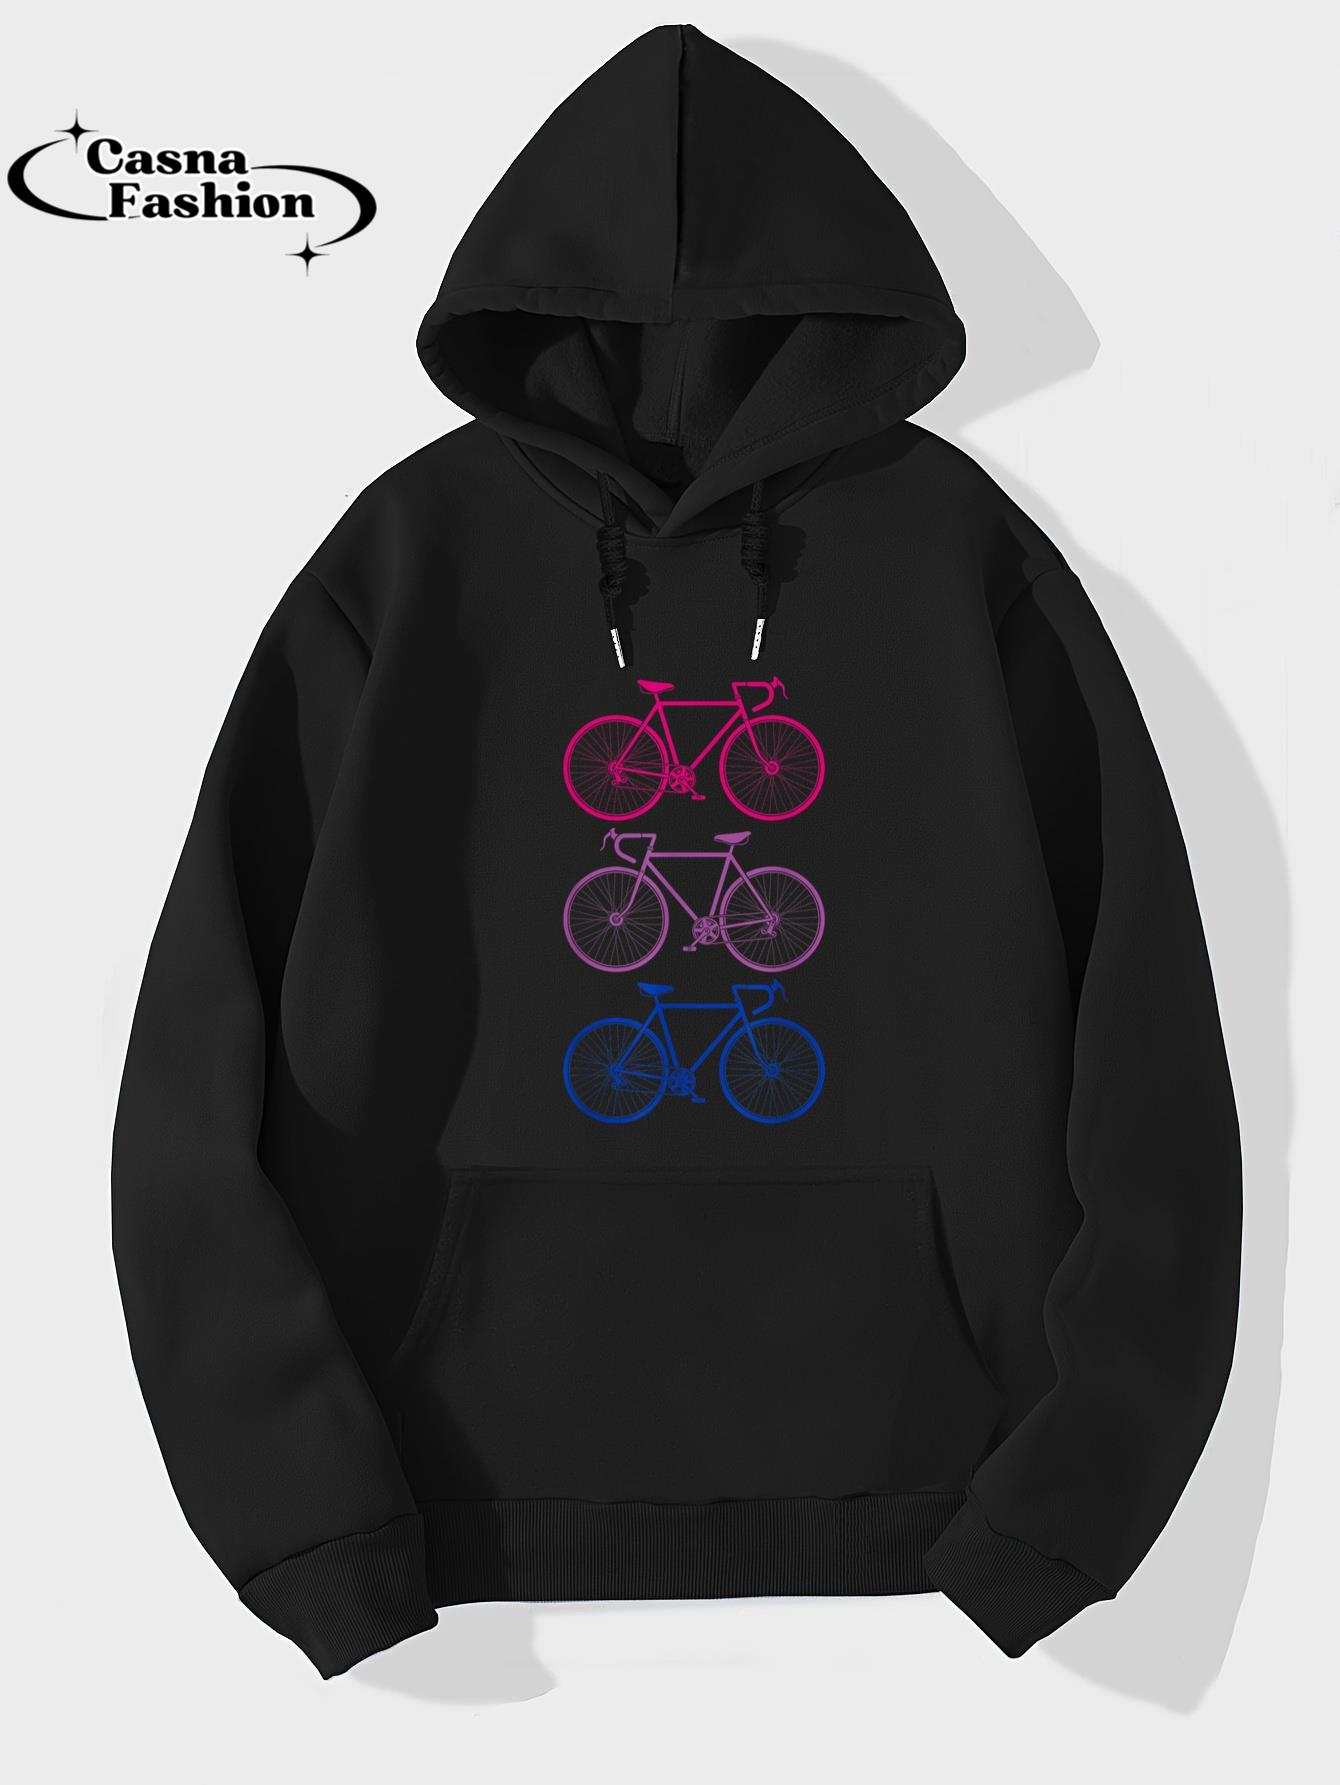 casnafashion_Hoodie_Retro Bicycles Bi Bisexual Flag Biker Bisexuality LGBT Pride T-Shirt_hoodie_black hoodie